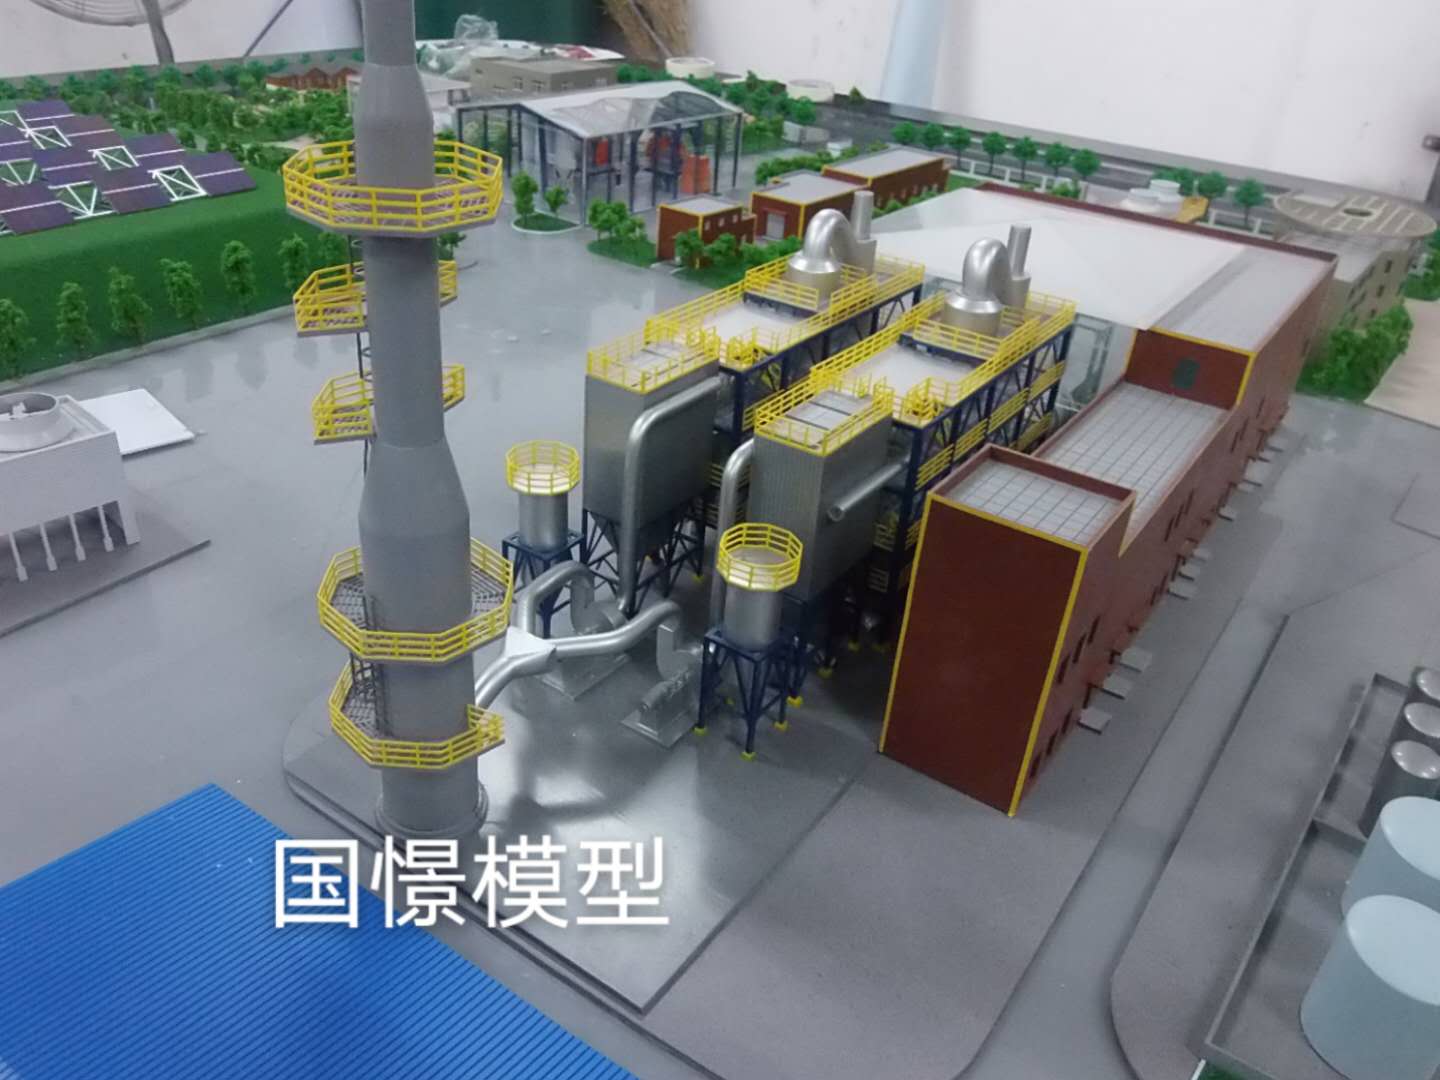 清河县工业模型